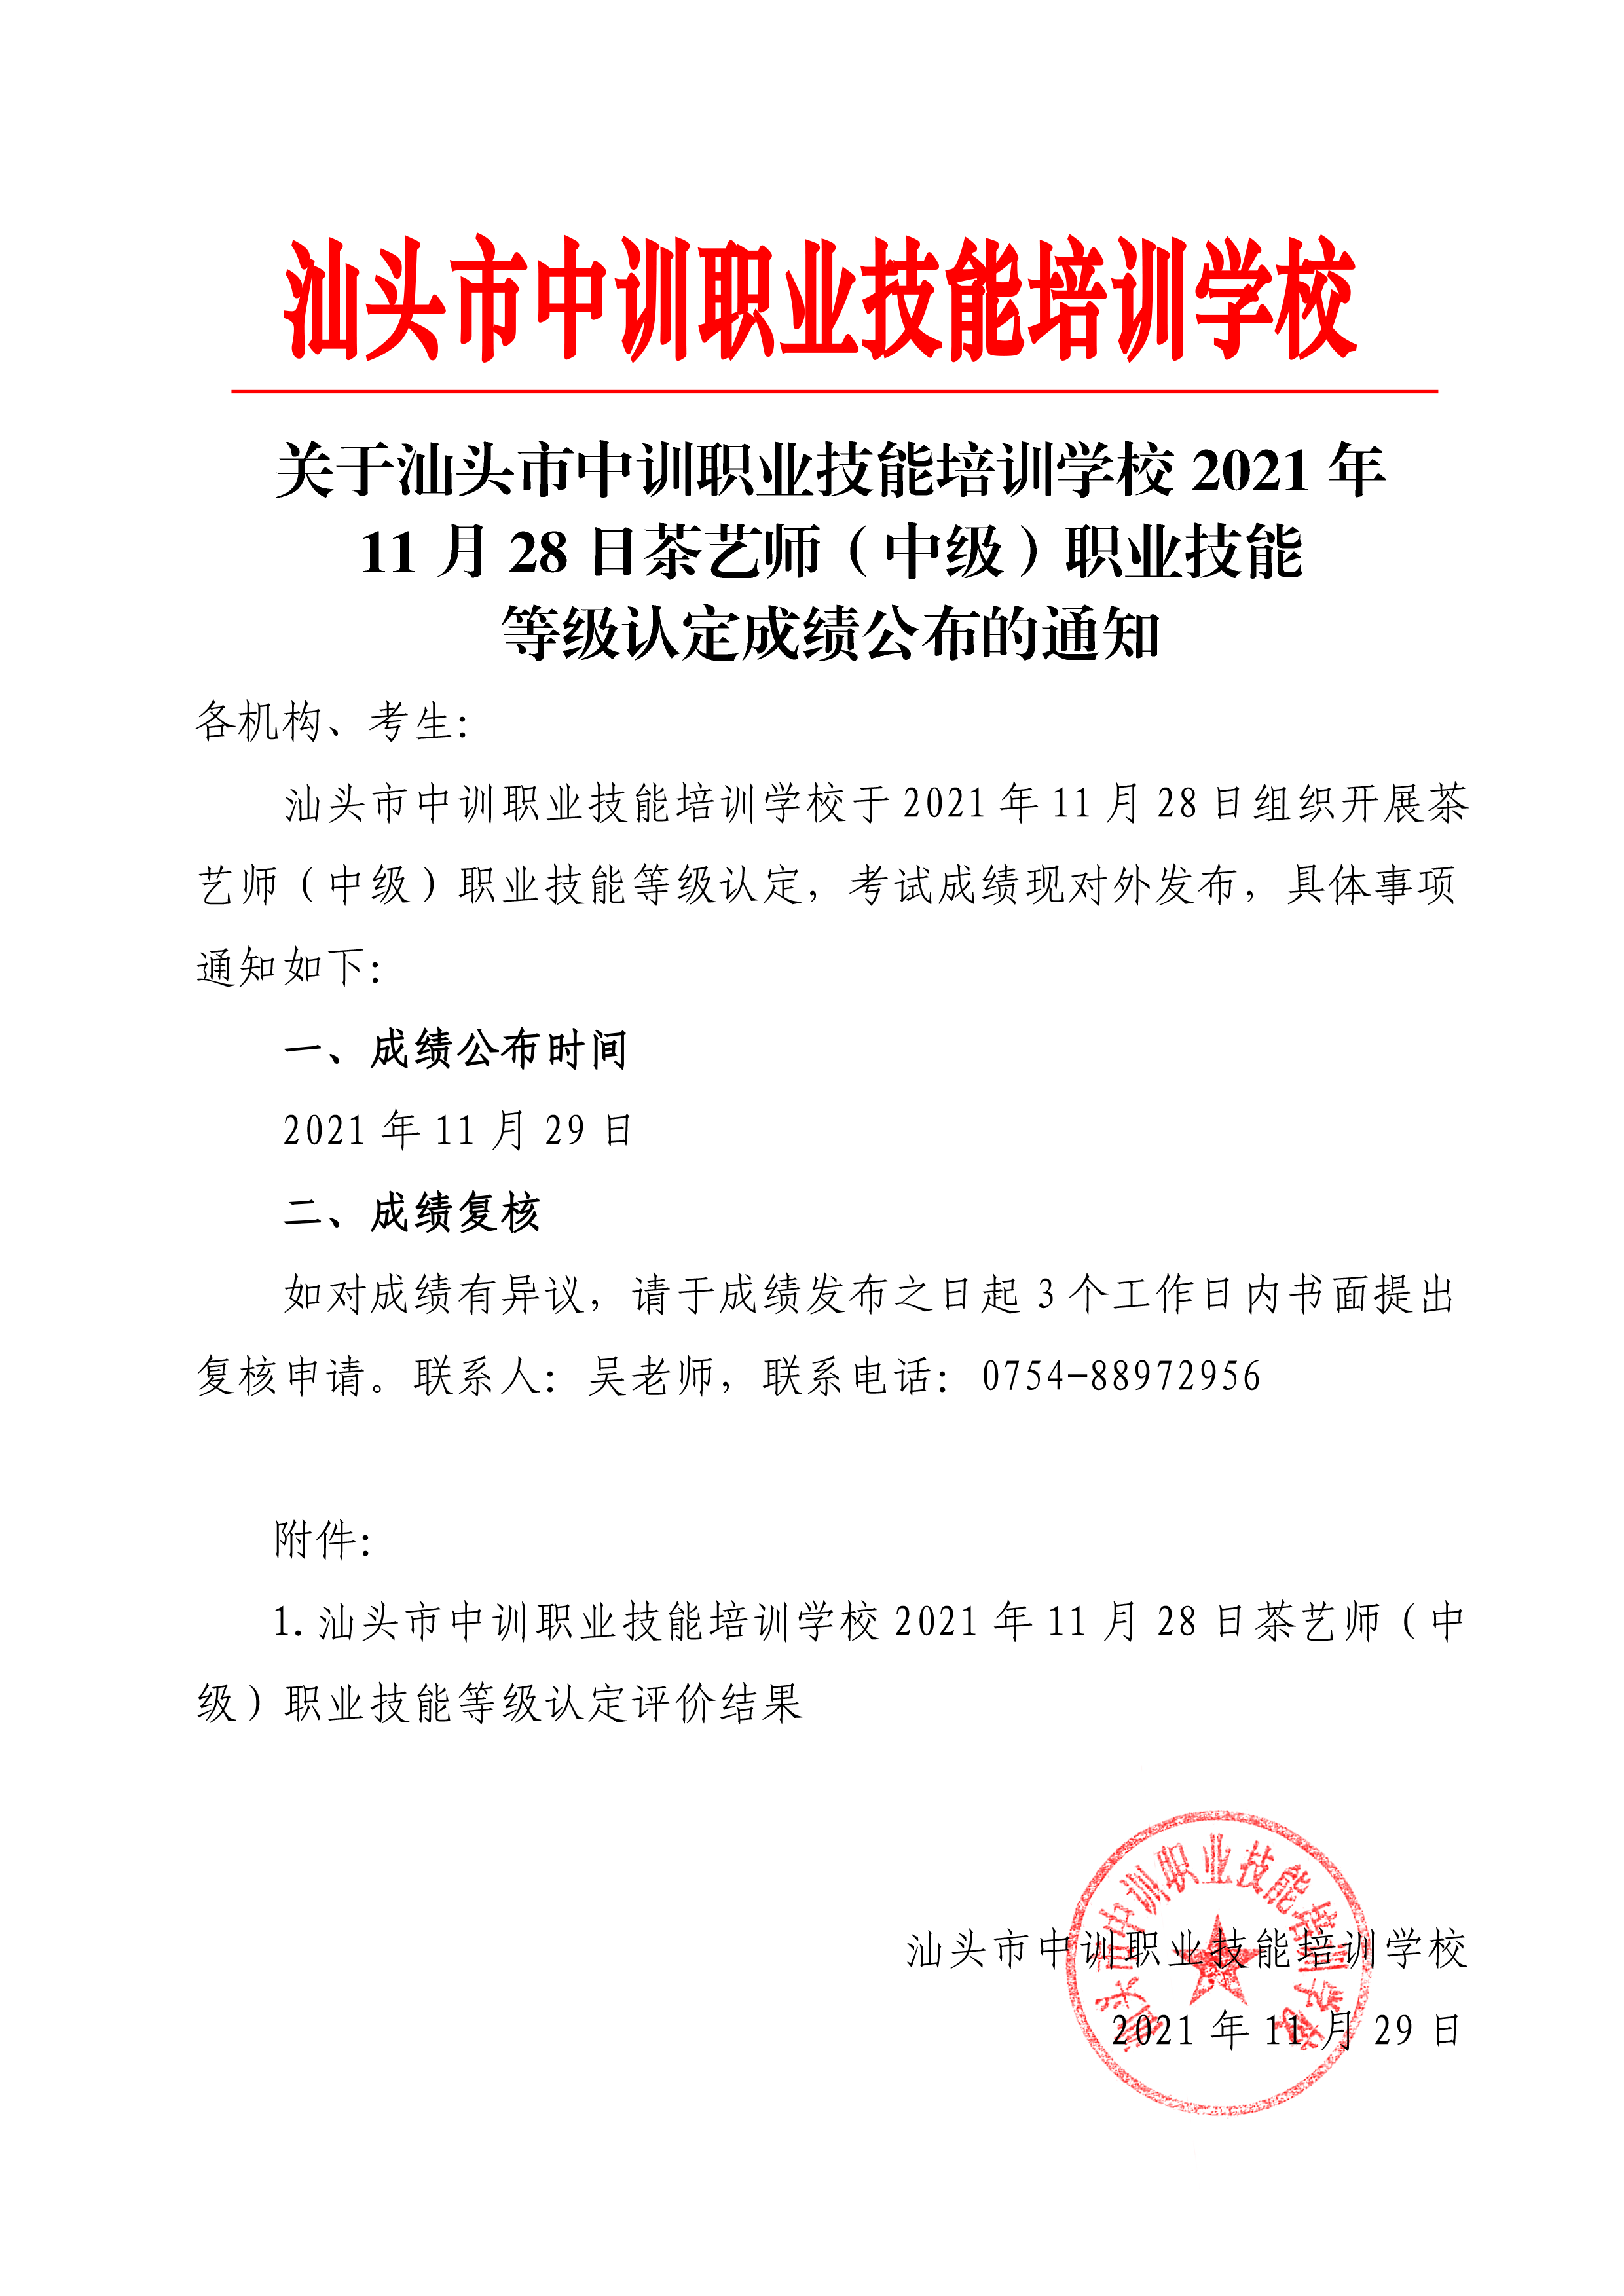 211127-28茶艺师（初）中级职业技能等级认定成绩公布通知-2.png